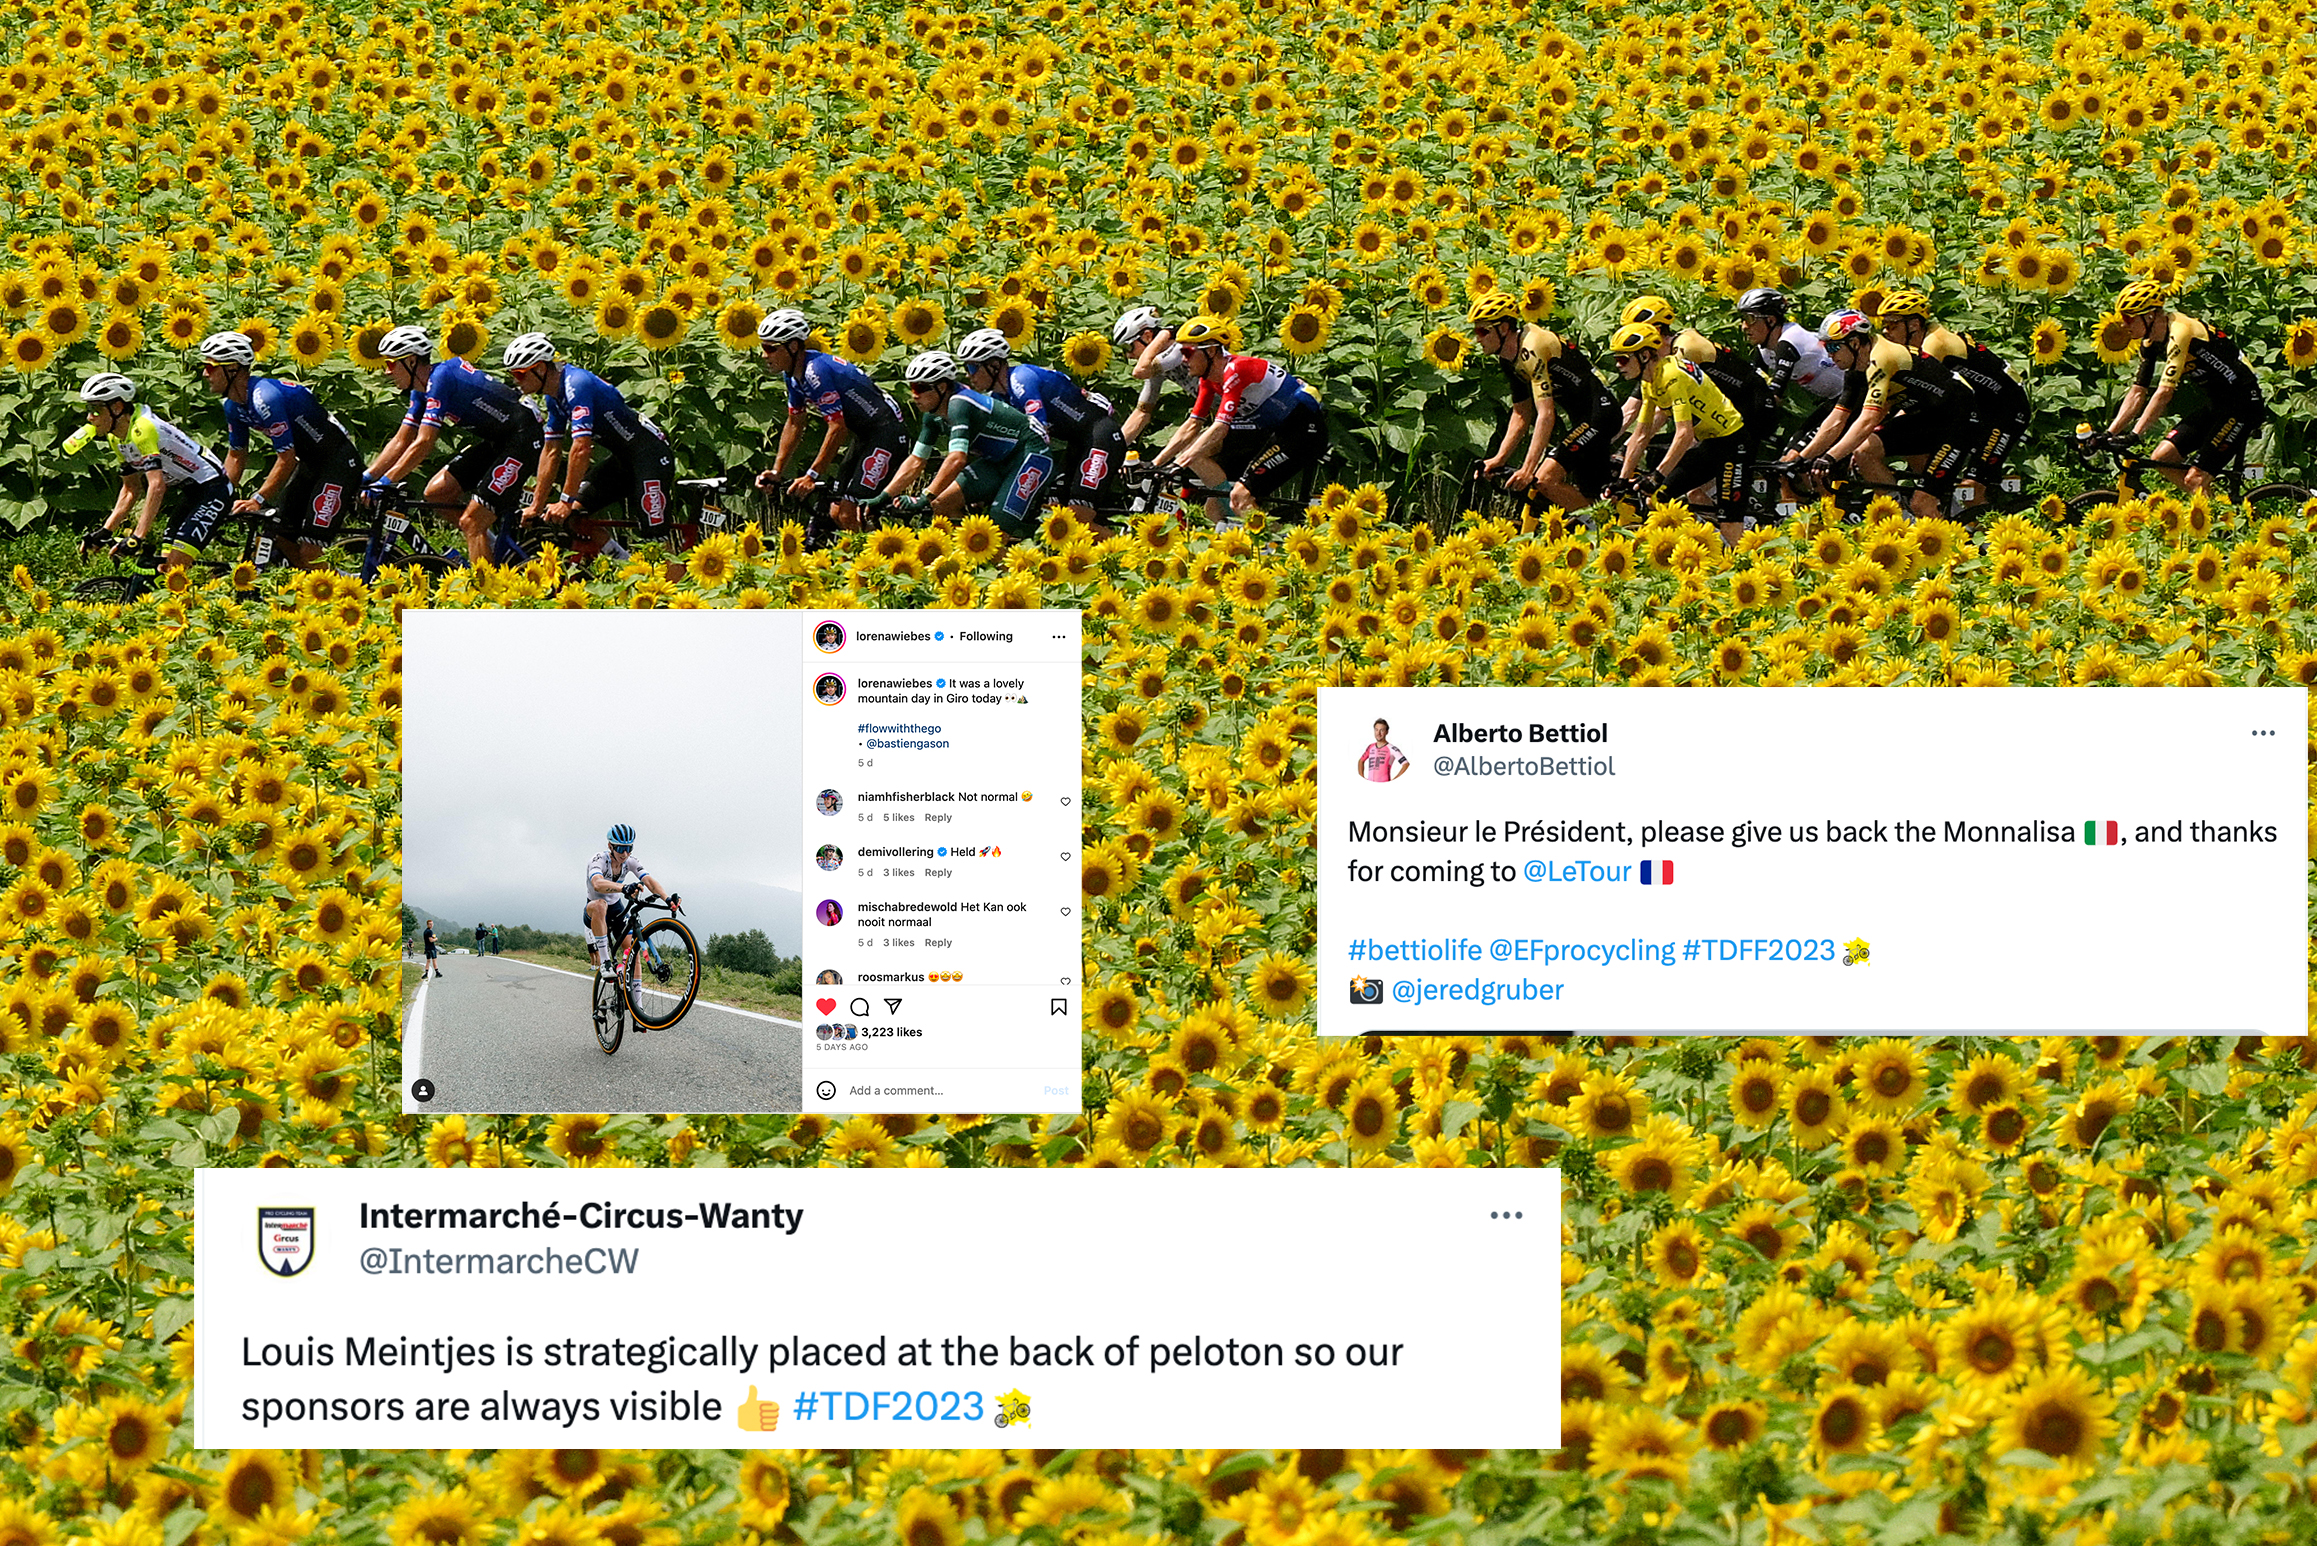 Tuits del día de descanso del Tour de Francia: Los ciclistas en las piscinas, la locura de Lidl y Movistar perfeccionan un baile